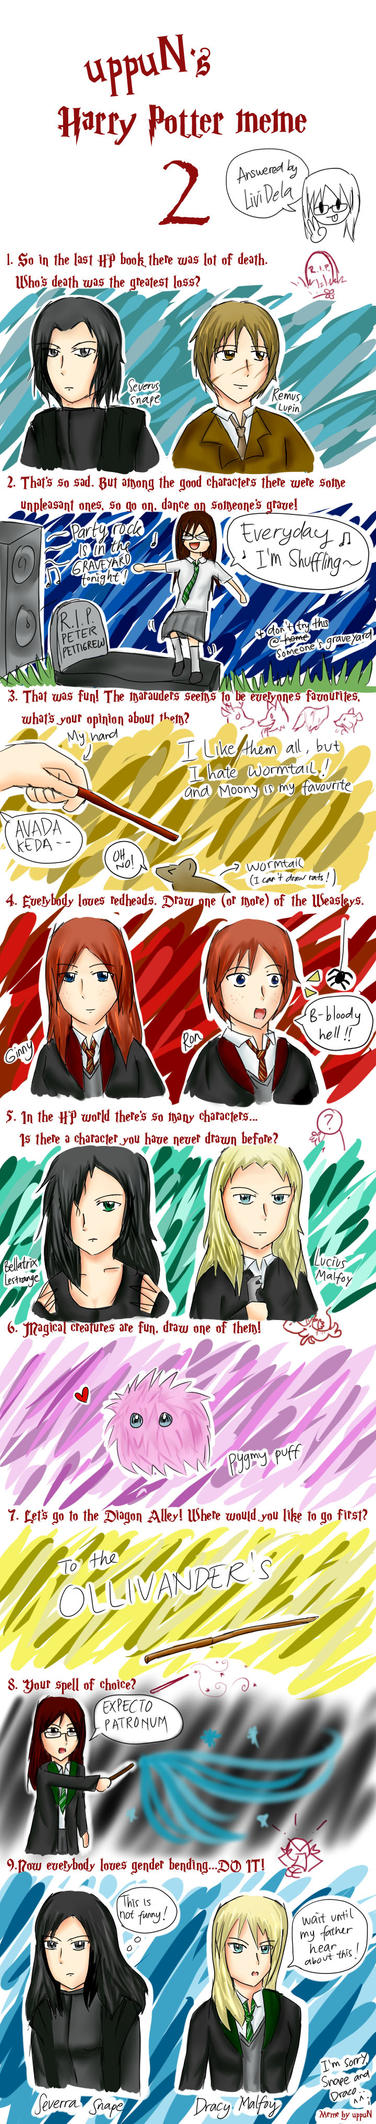 Harry Potter Art Meme 2 by LiviDela on DeviantArt